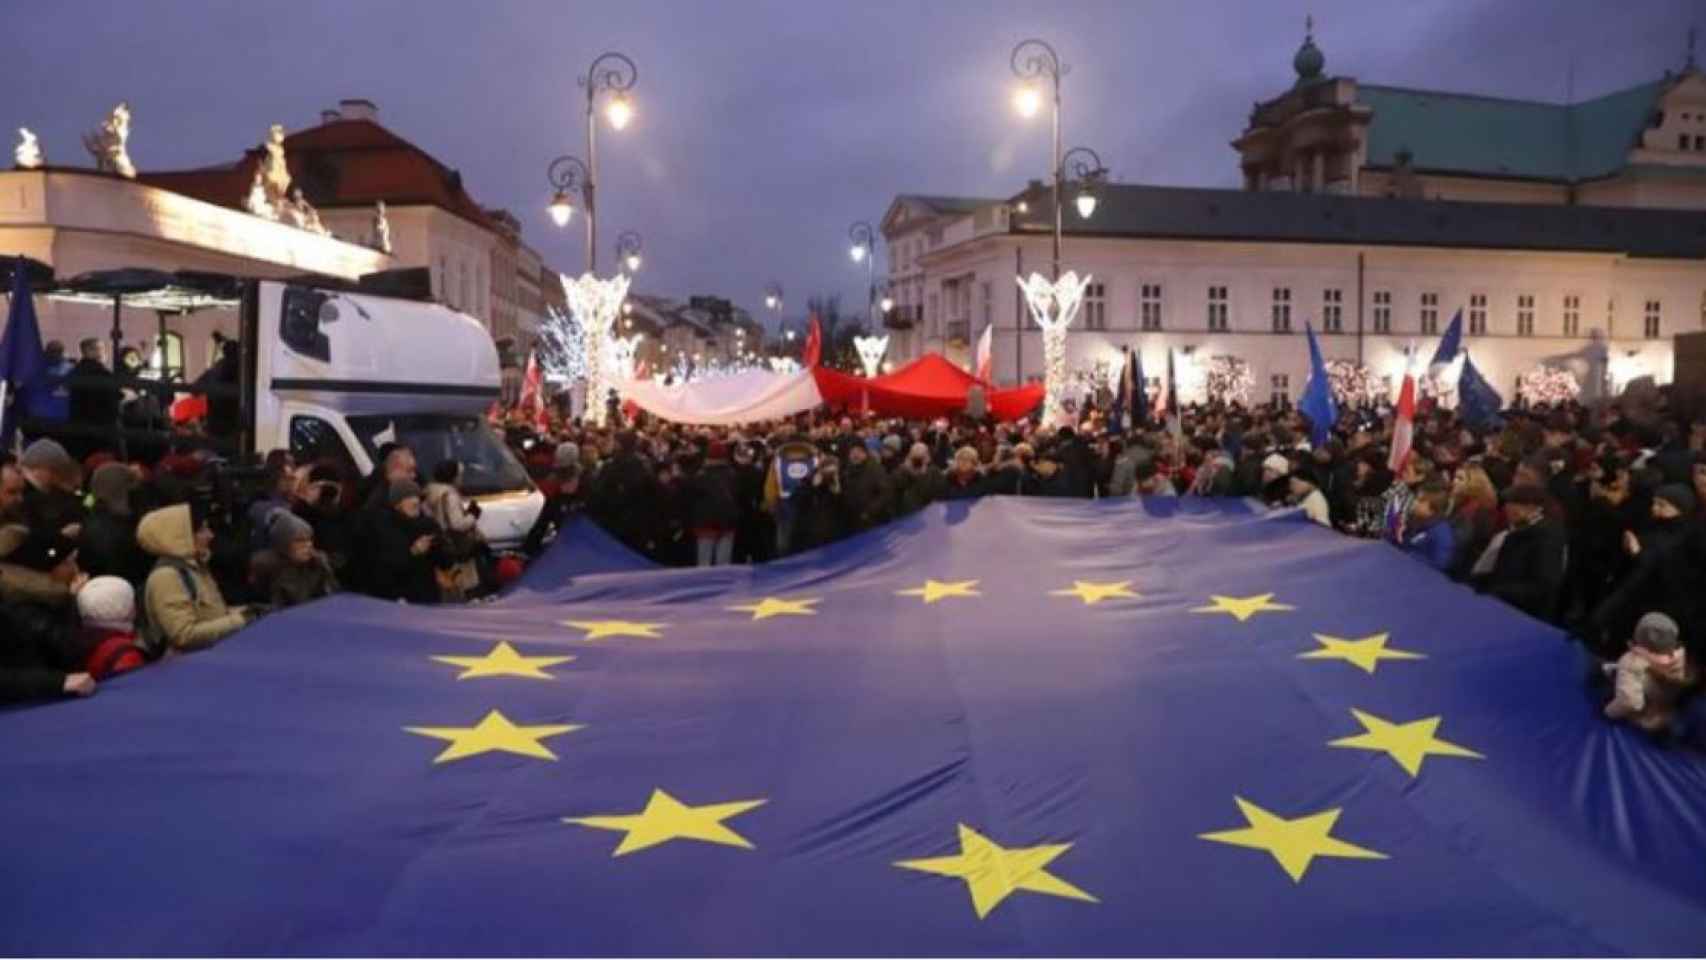 Jueces y abogados de toda Europa participan en la 'Marcha de los Mil Togas' celebrada en Varsovia el 11 de enero de 2020 para protestar contra las reformas judiciales del Gobierno.